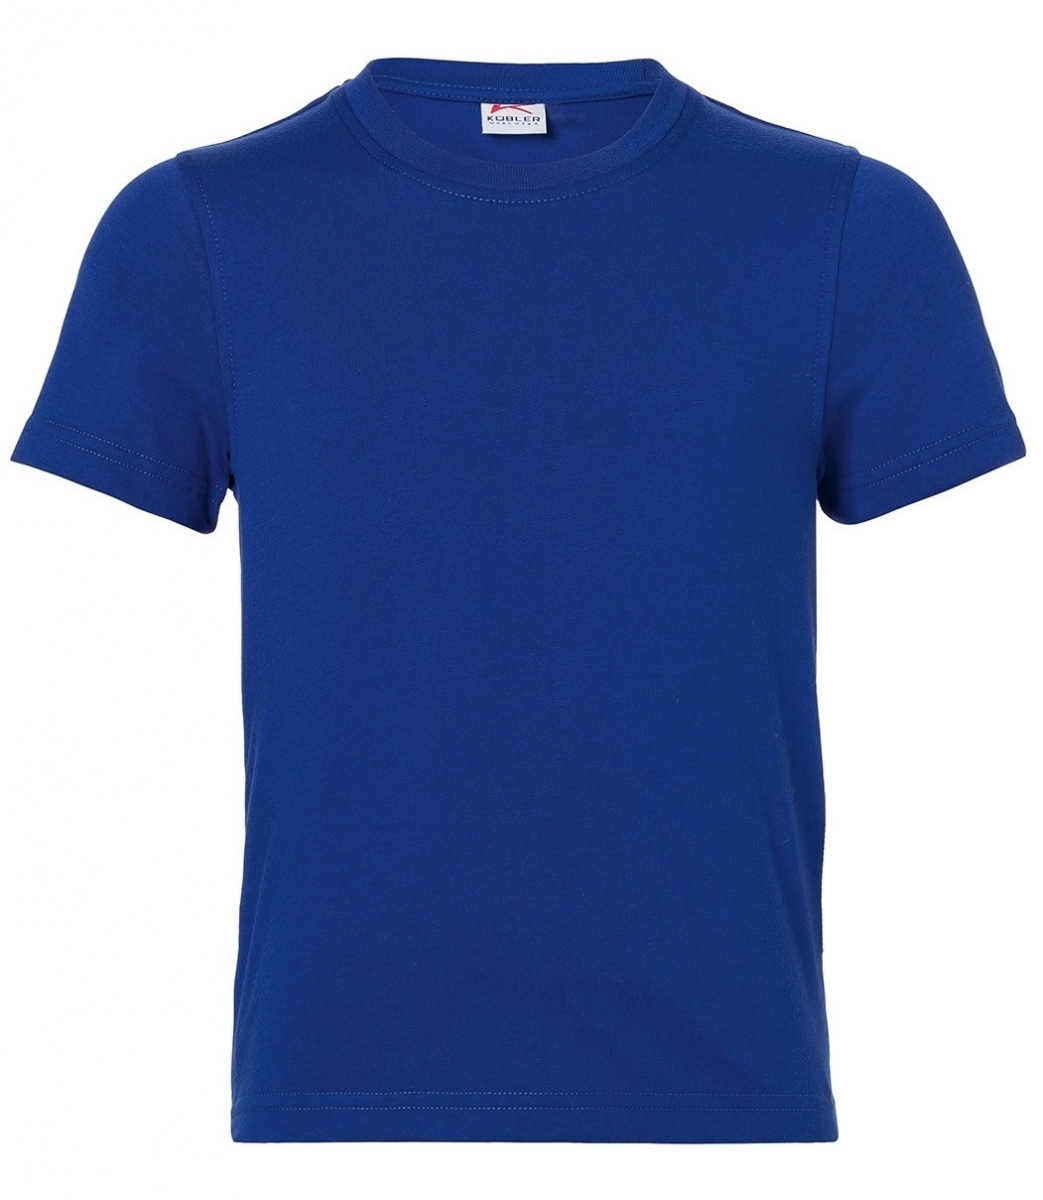 KBLER-Workwear-Kinder-T-Shirts, 160 g/m, kornblau